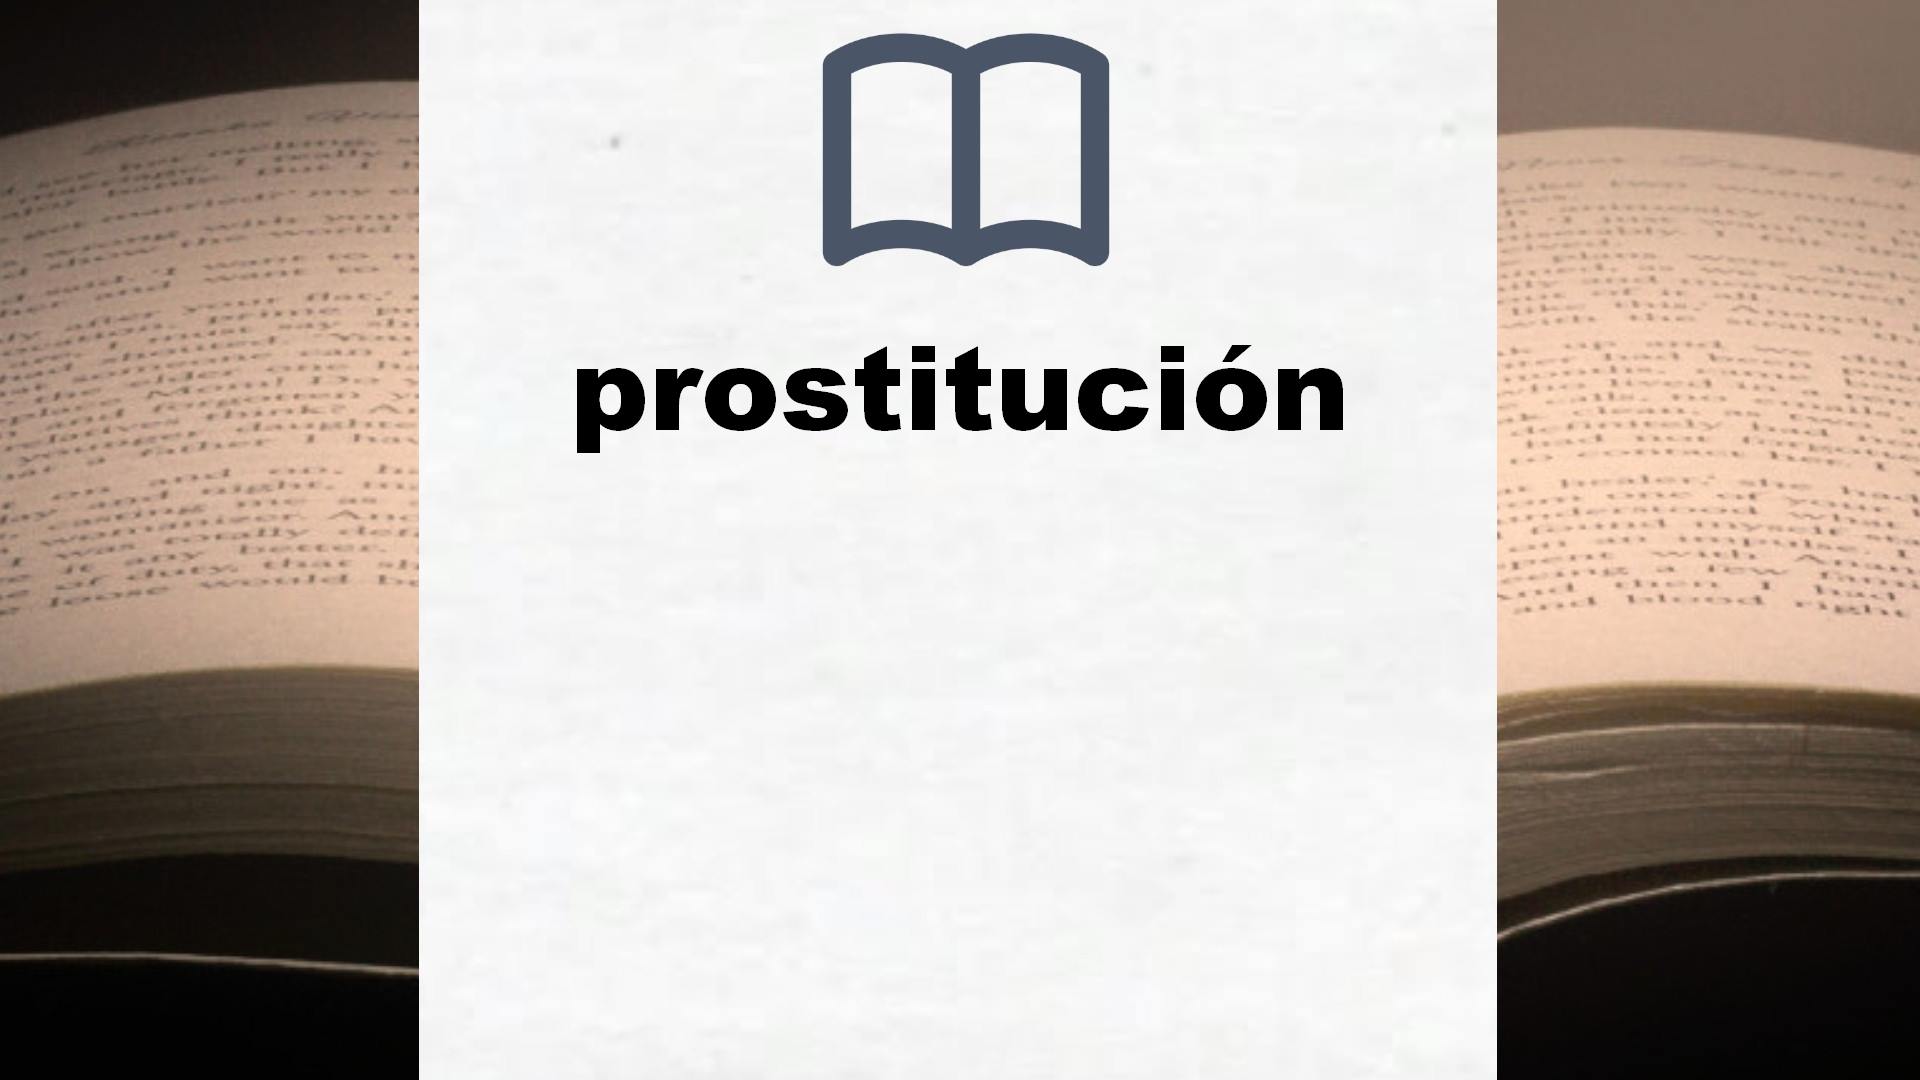 Libros sobre prostitución